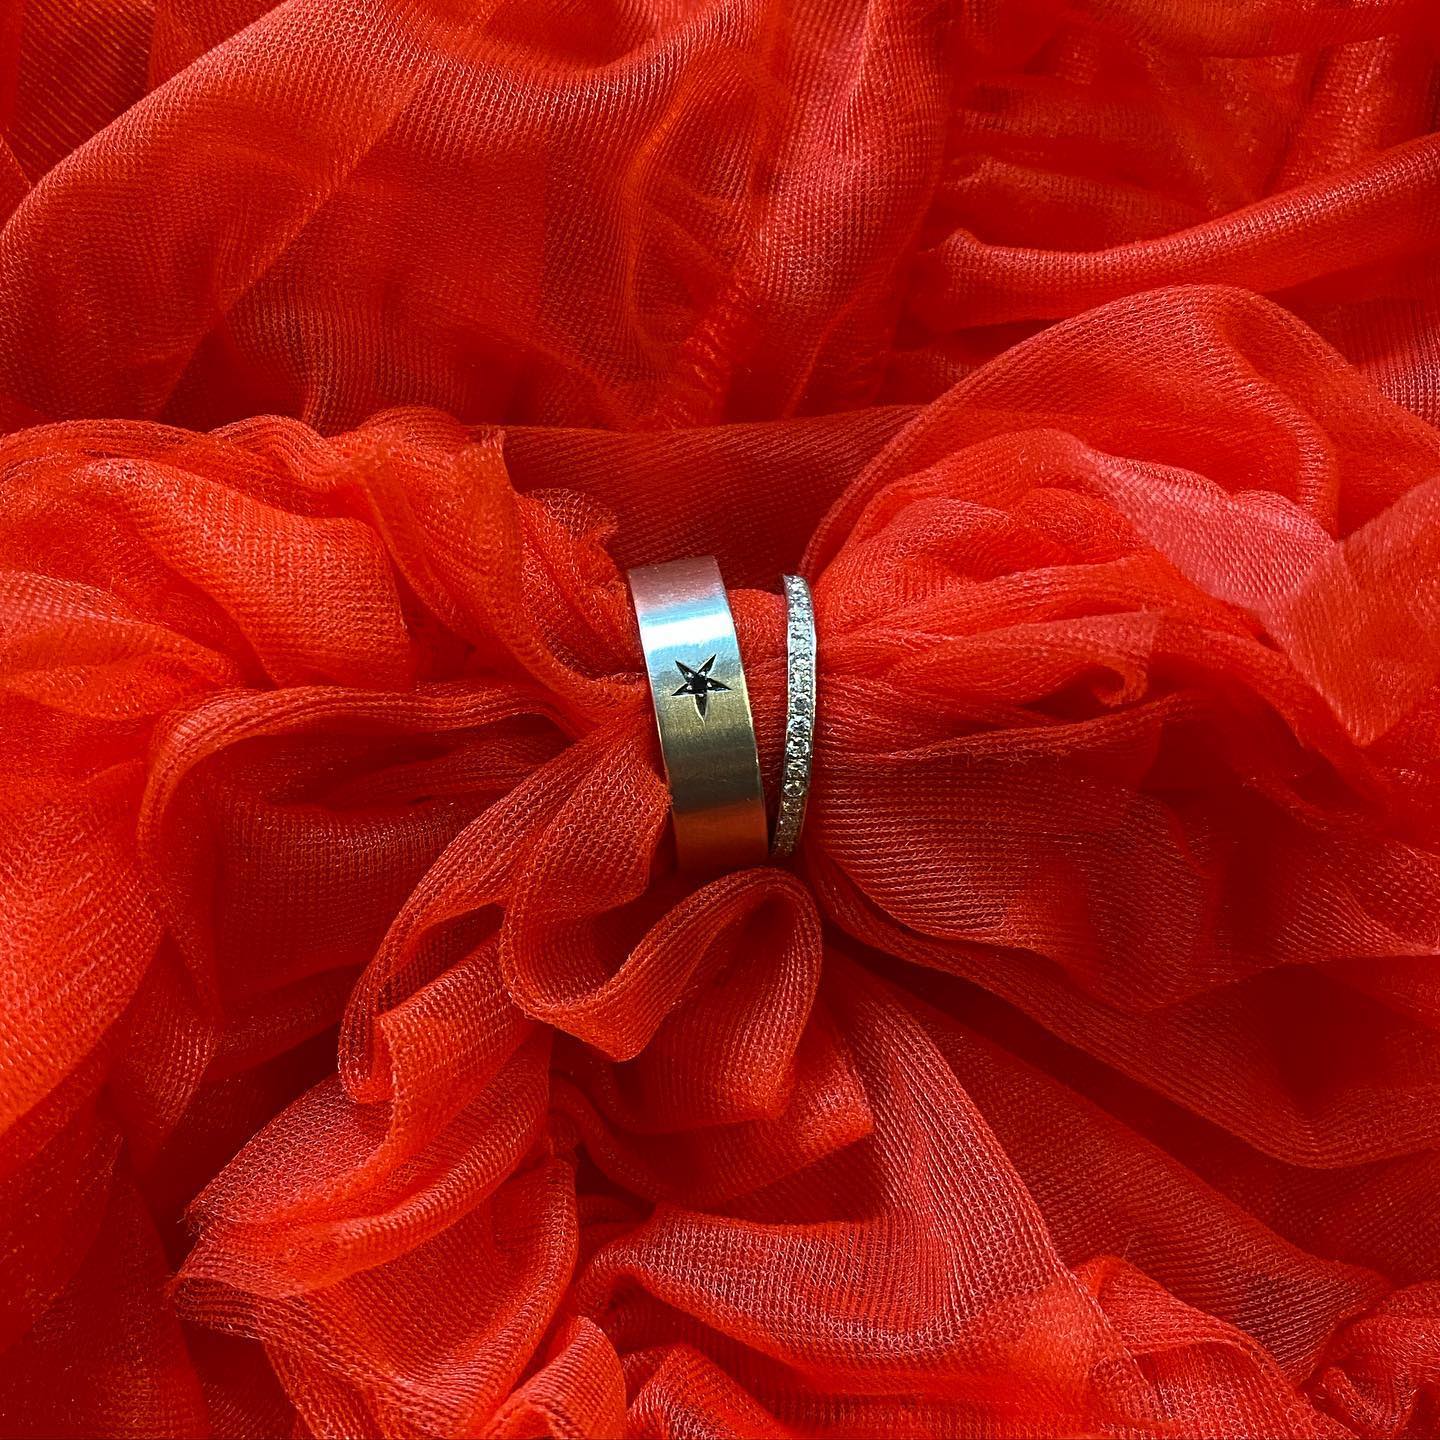 Gentleman ring Ring-14 Karat guld eller 925 sølv med sort diamant